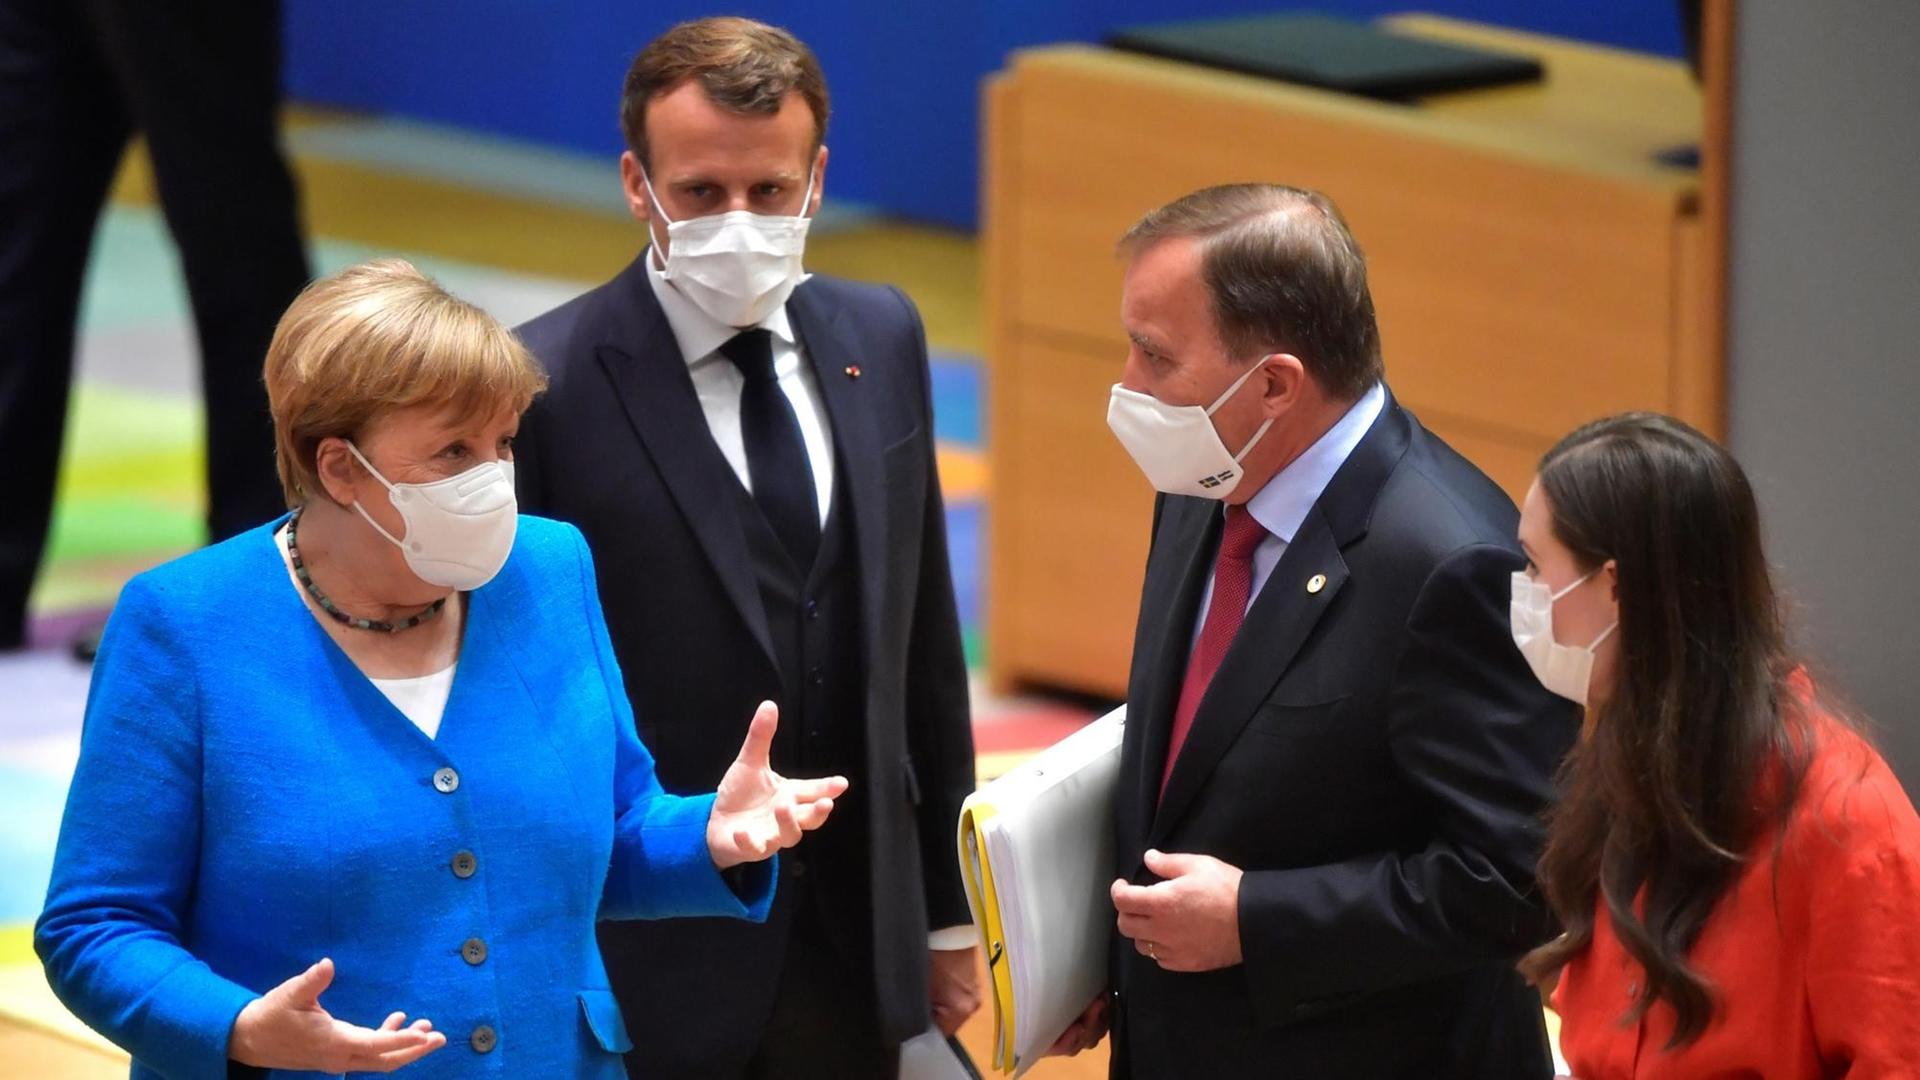 Brüssel im Juli 2020: Die vier europäischen Regierungs- und Staatschefs Merkel, Macron, Marin und Löfven, im Gespräch über Coronahilfen und die mittelfristige Finanzplanung der EU.